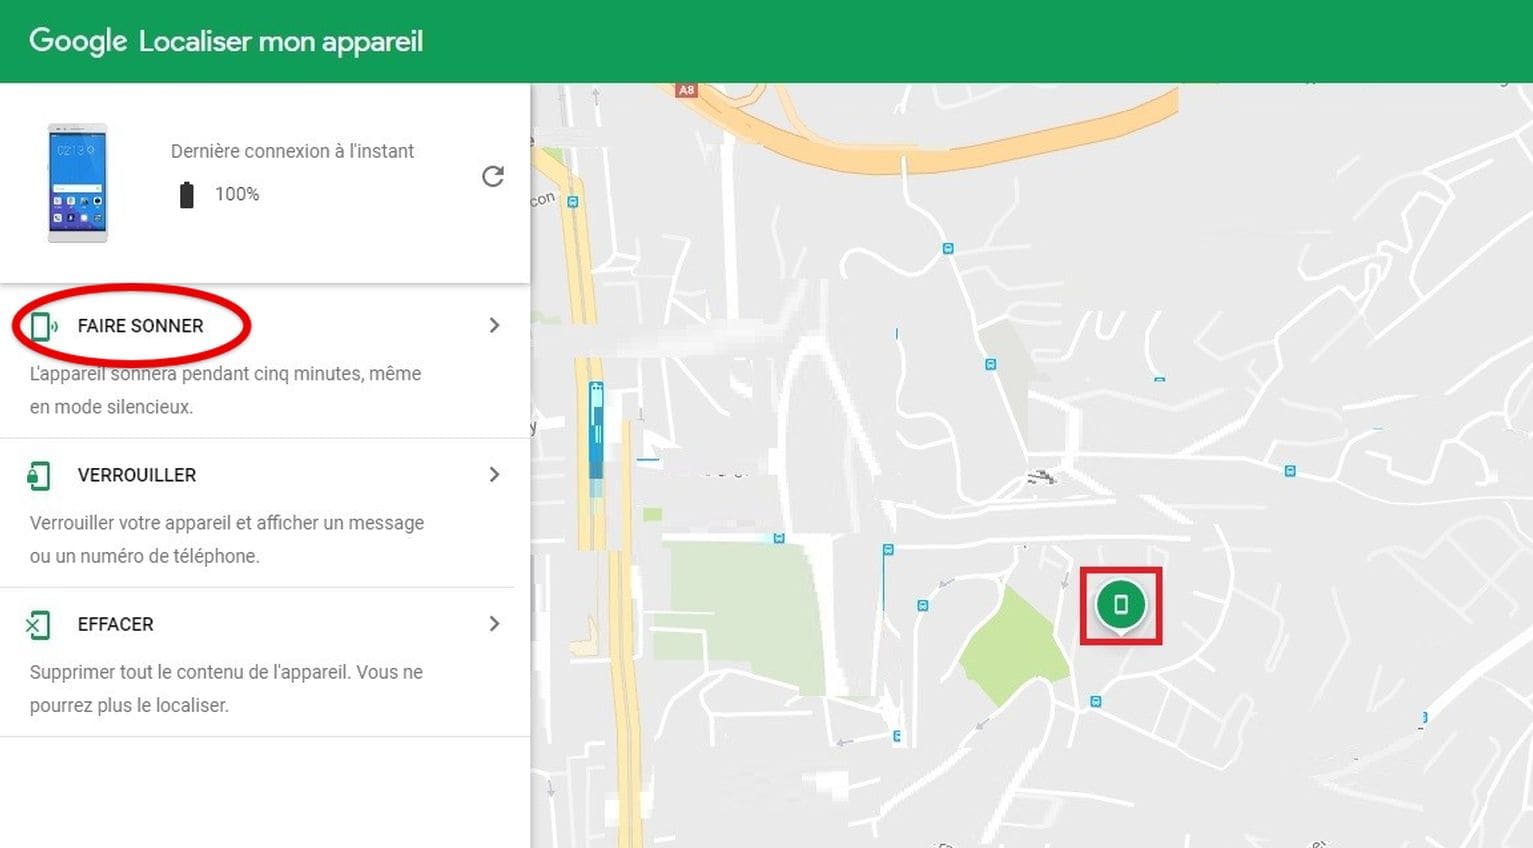 Faire sonner votre téléphone Motorola avec Google Localiser